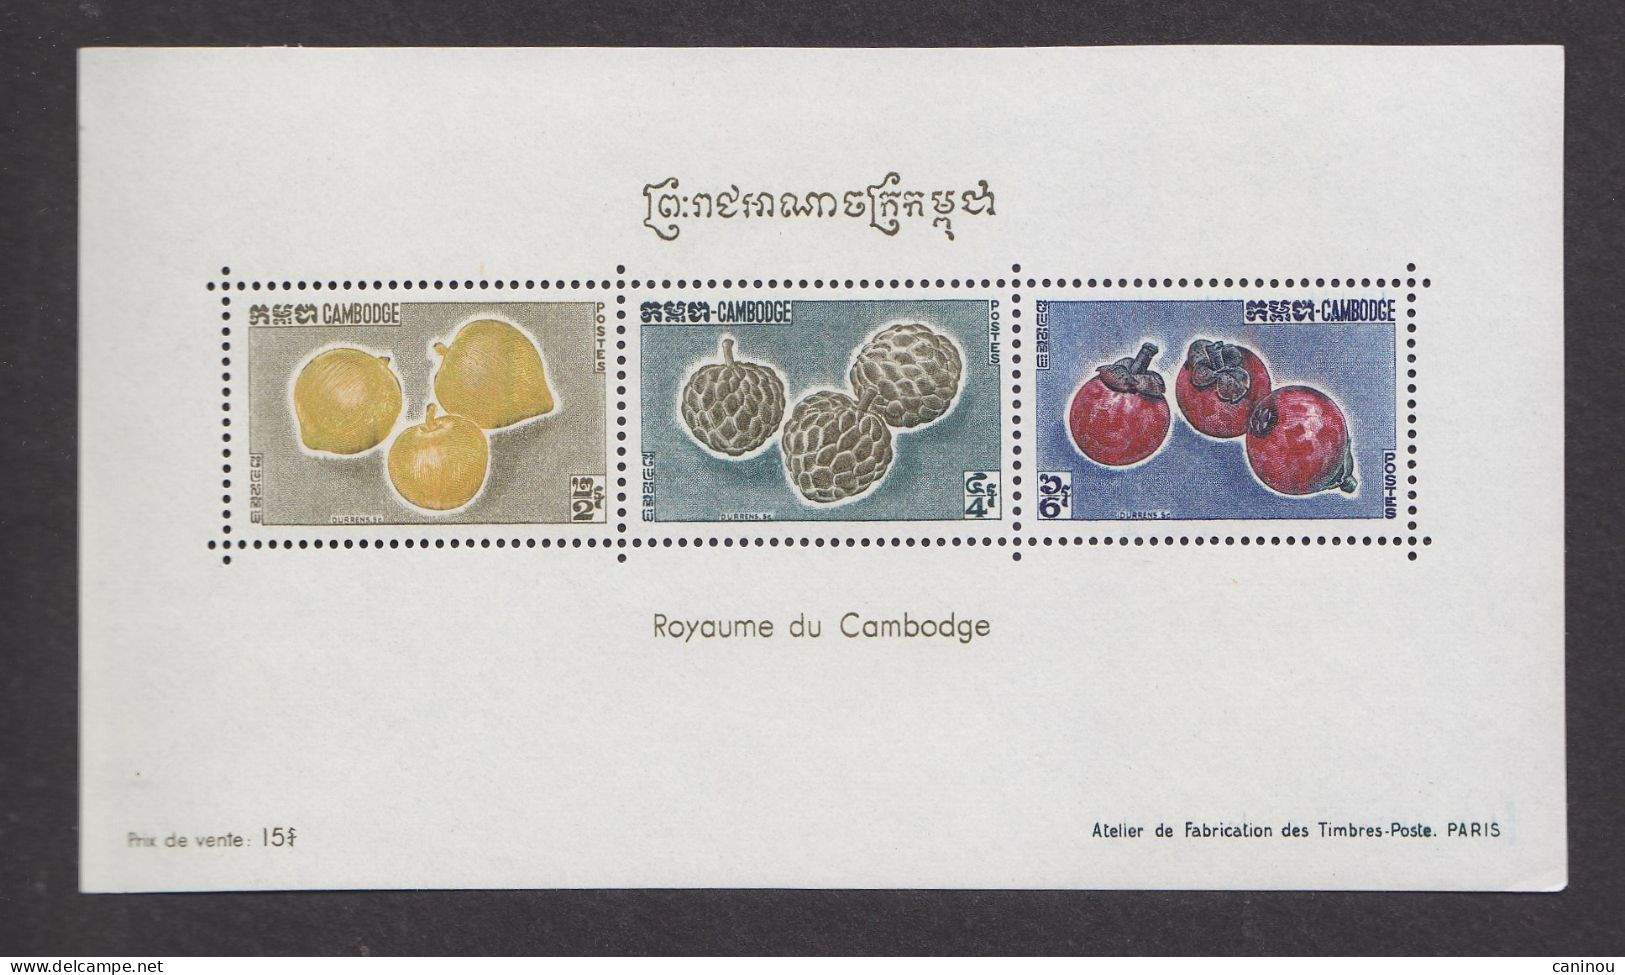 CAMBODGE BF 23 FRUITS 1962 NEUF SANS CHARNIERES - Cambodge